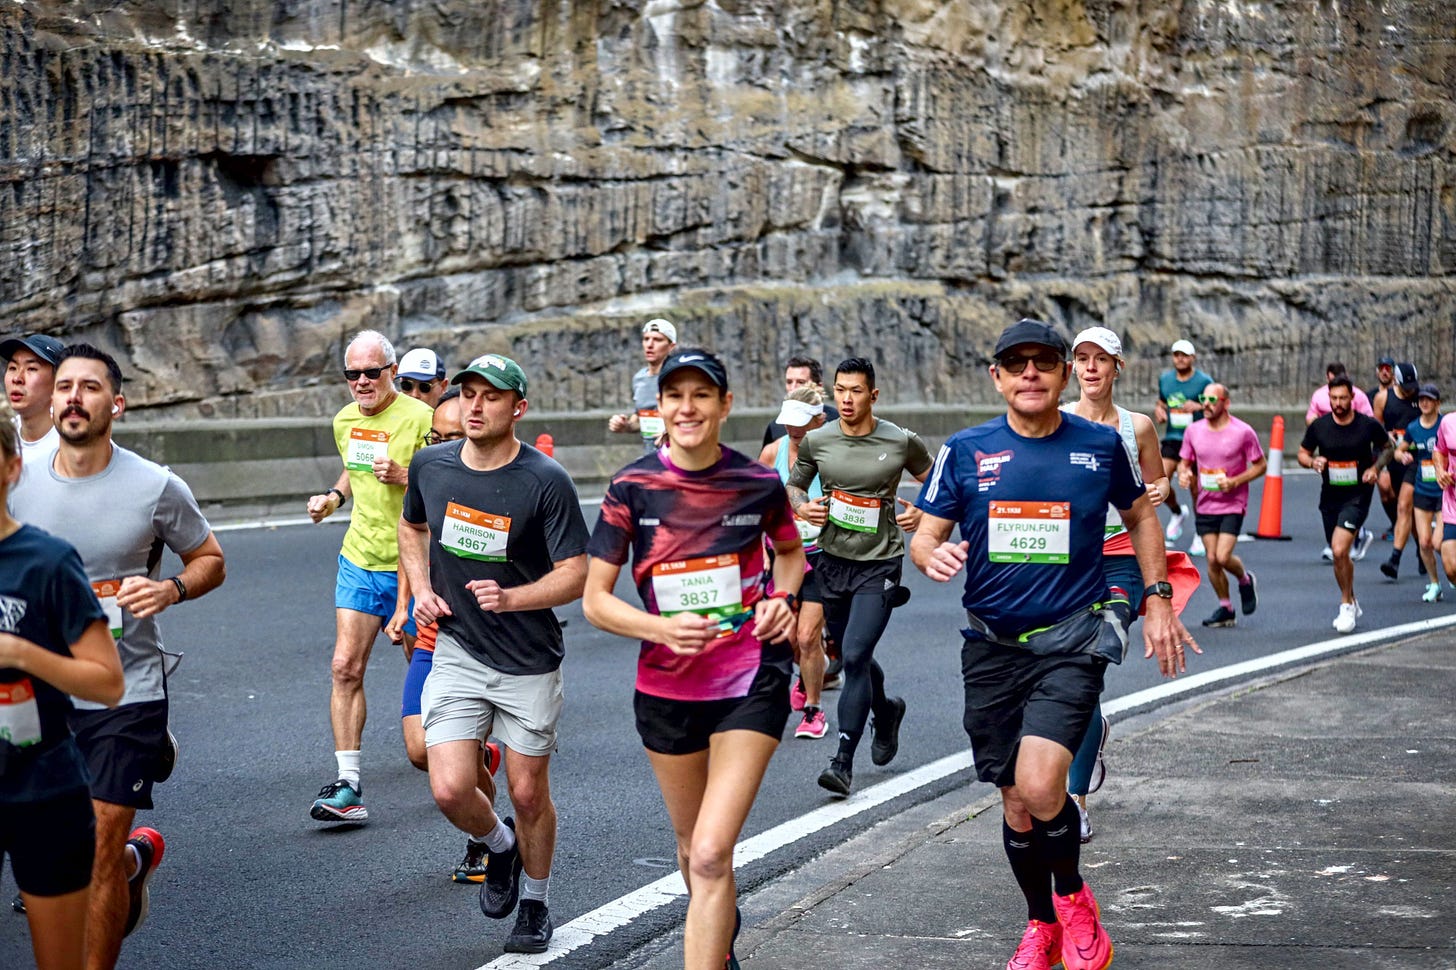 HOKA Runaway Sydney Half Marathon, runners in the early miles